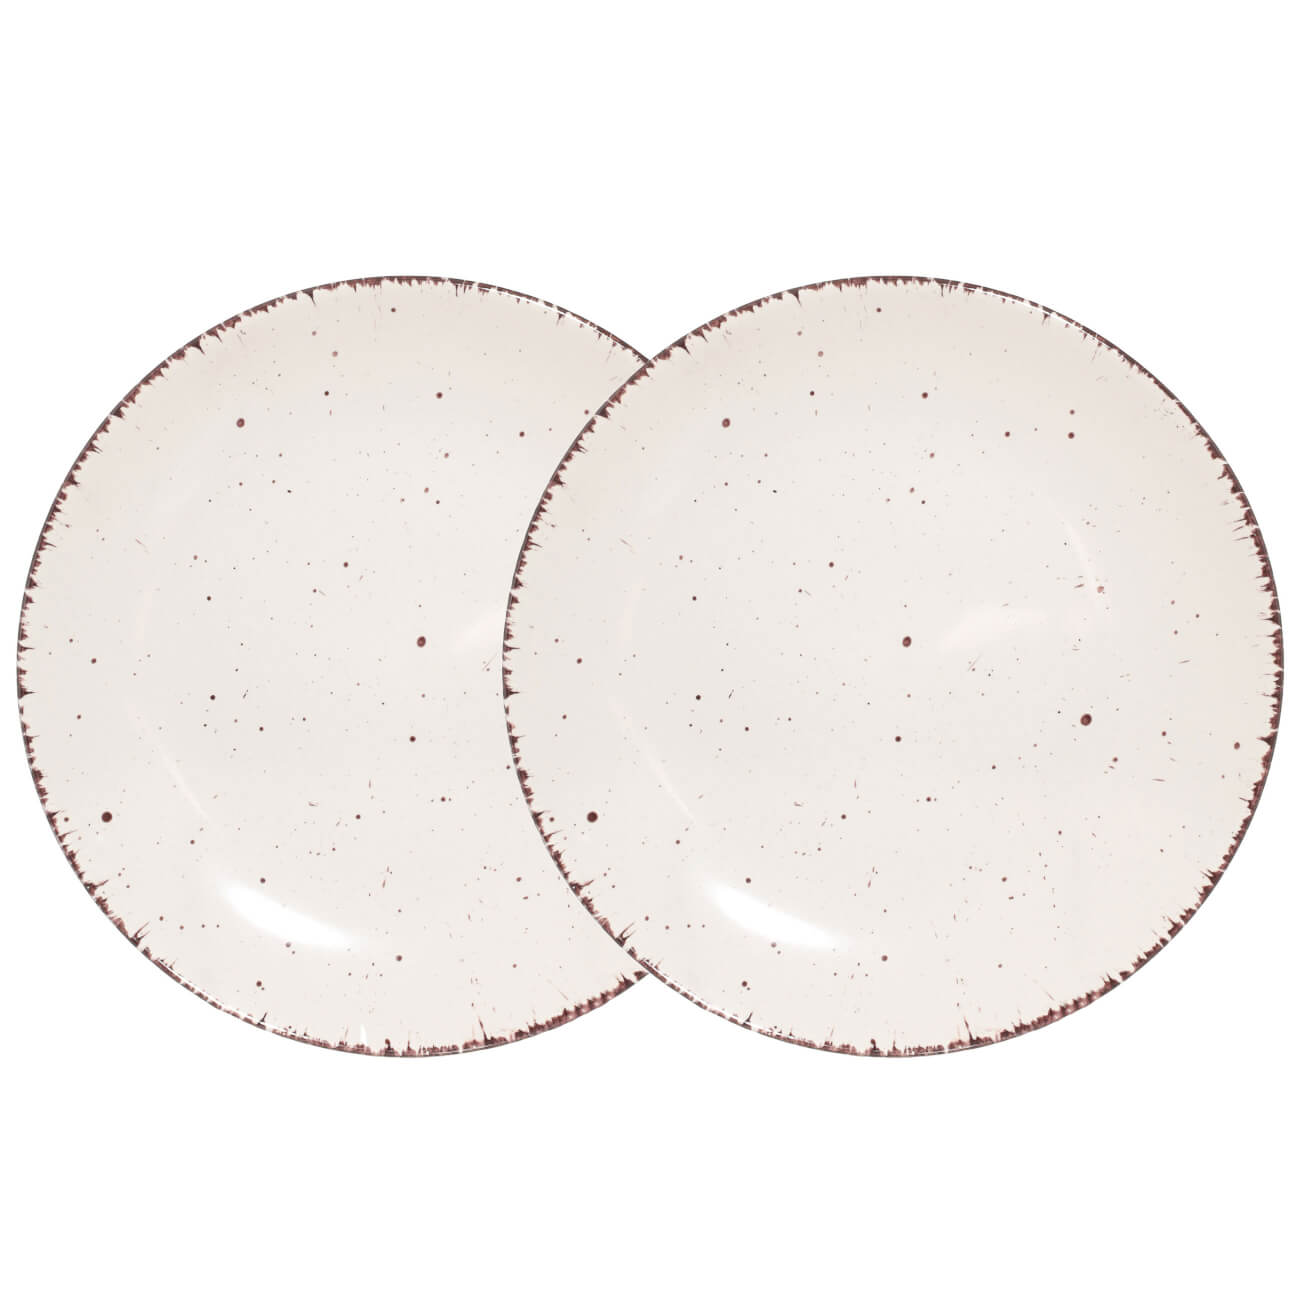 Тарелка закусочная, 21 см, 2 шт, керамика, бежевая, в крапинку, Speckled тарелка закусочная noritake рочестер 21 см